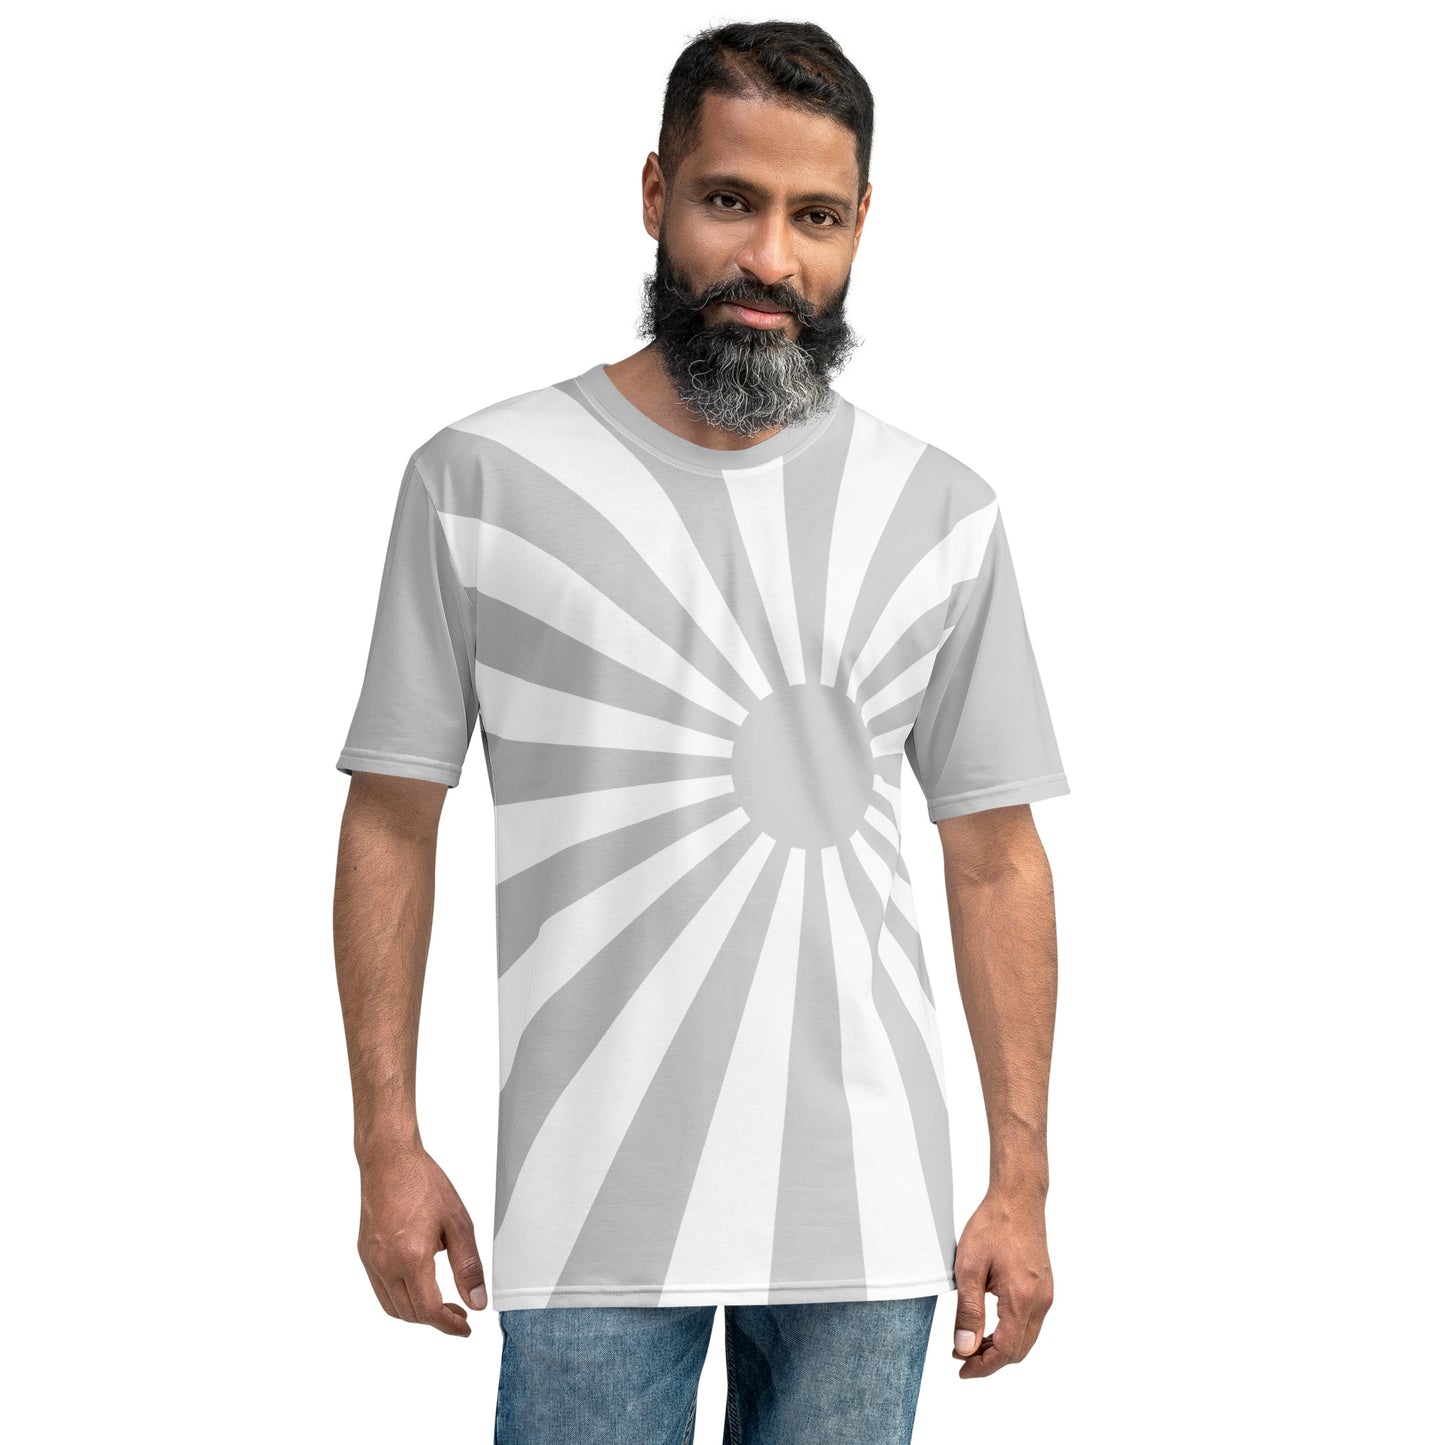 Men's T-shirt "Grayrise"